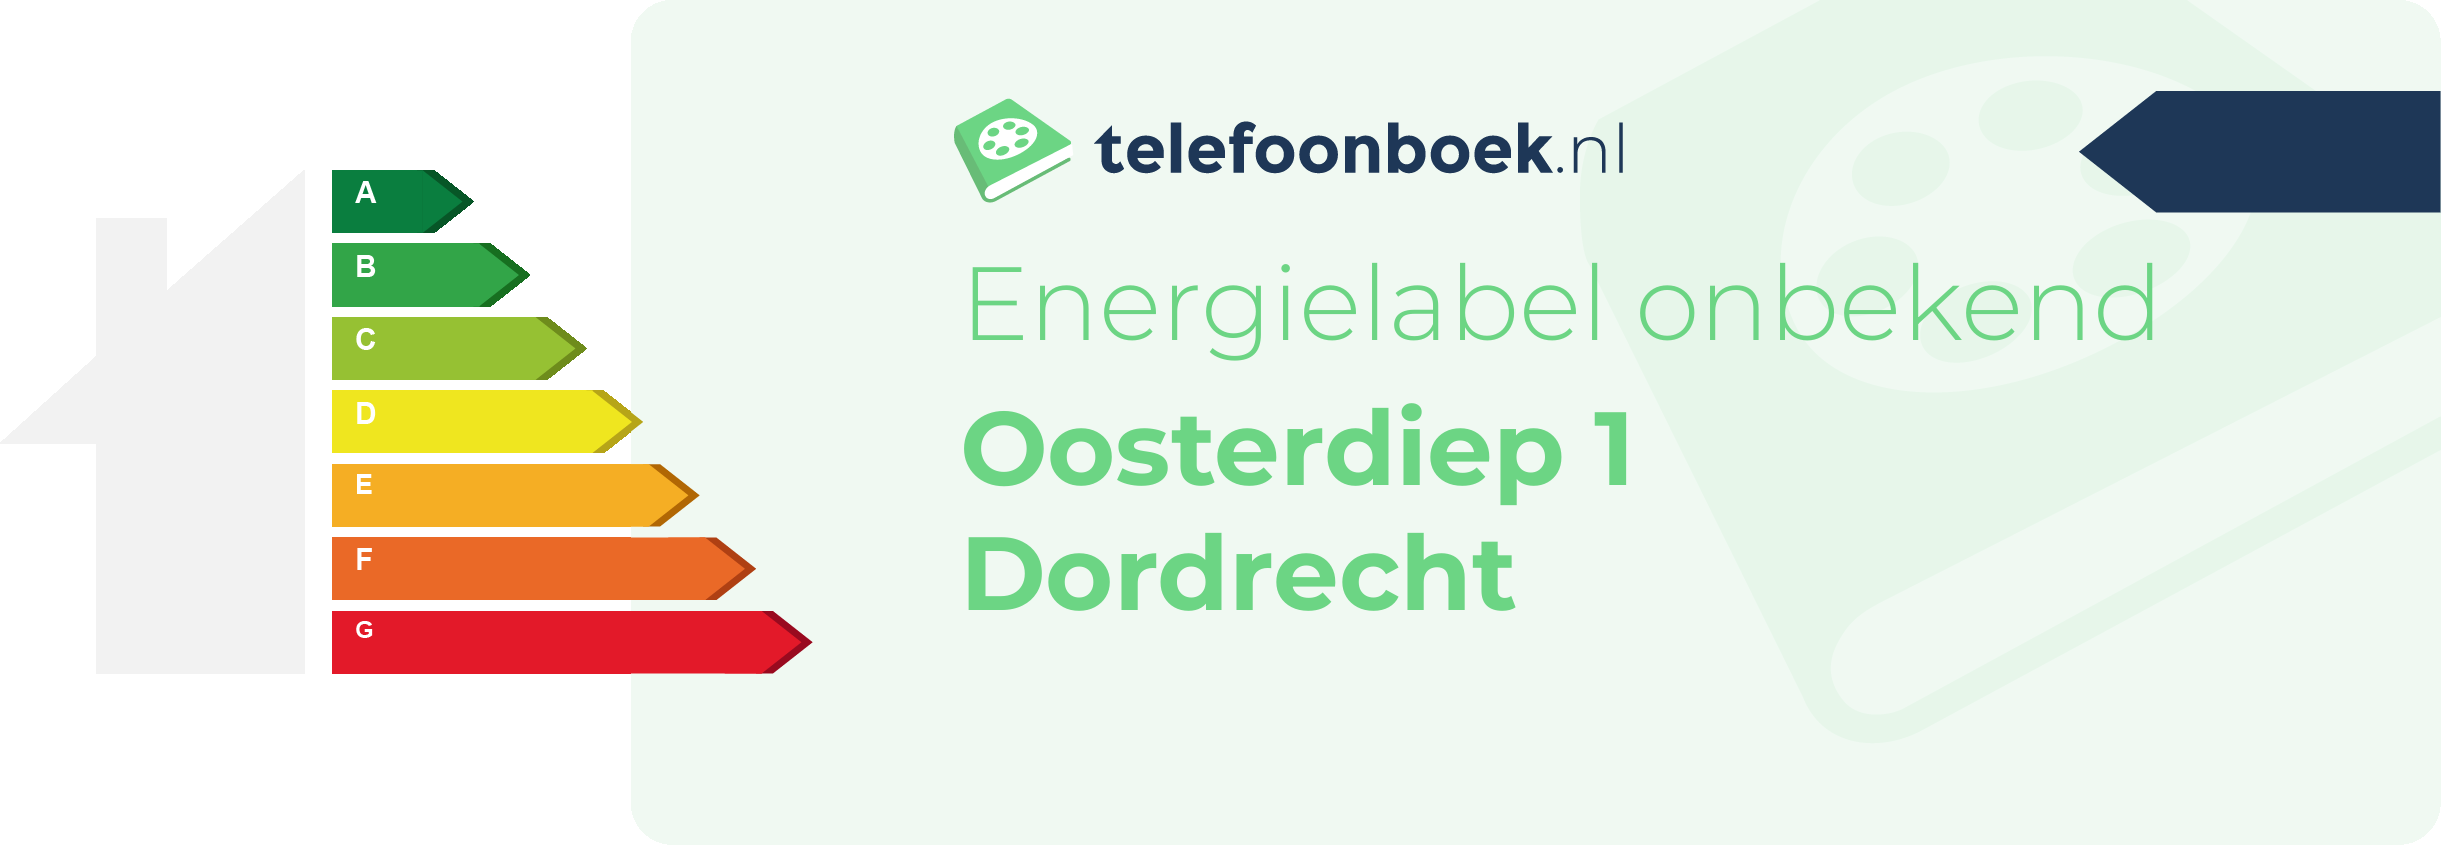 Energielabel Oosterdiep 1 Dordrecht